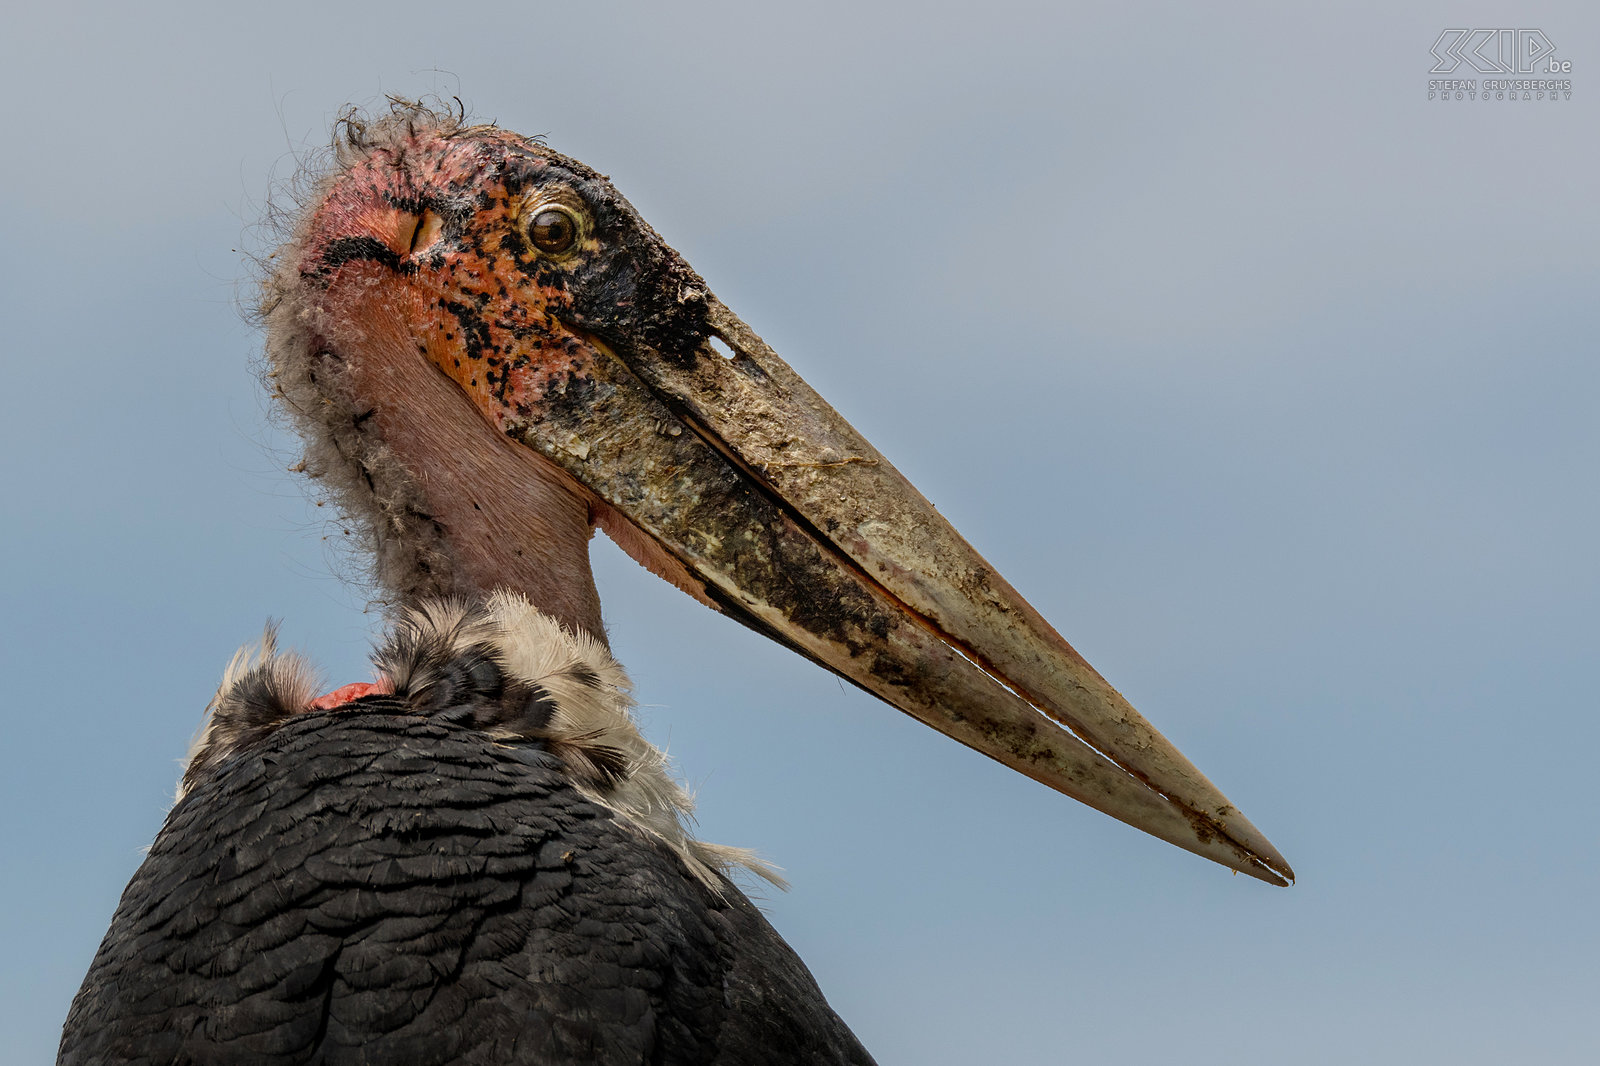 Lake Ziway - Maraboe close-up Close-up van een Afrikaanse maraboe (Marabou stork, Leptoptilos crumenifer), een grote vogel uit de ooievaarsfamilie die voornamelijk een aaseter is. De mooiste vogel in Afrika is het alvast niet. Stefan Cruysberghs